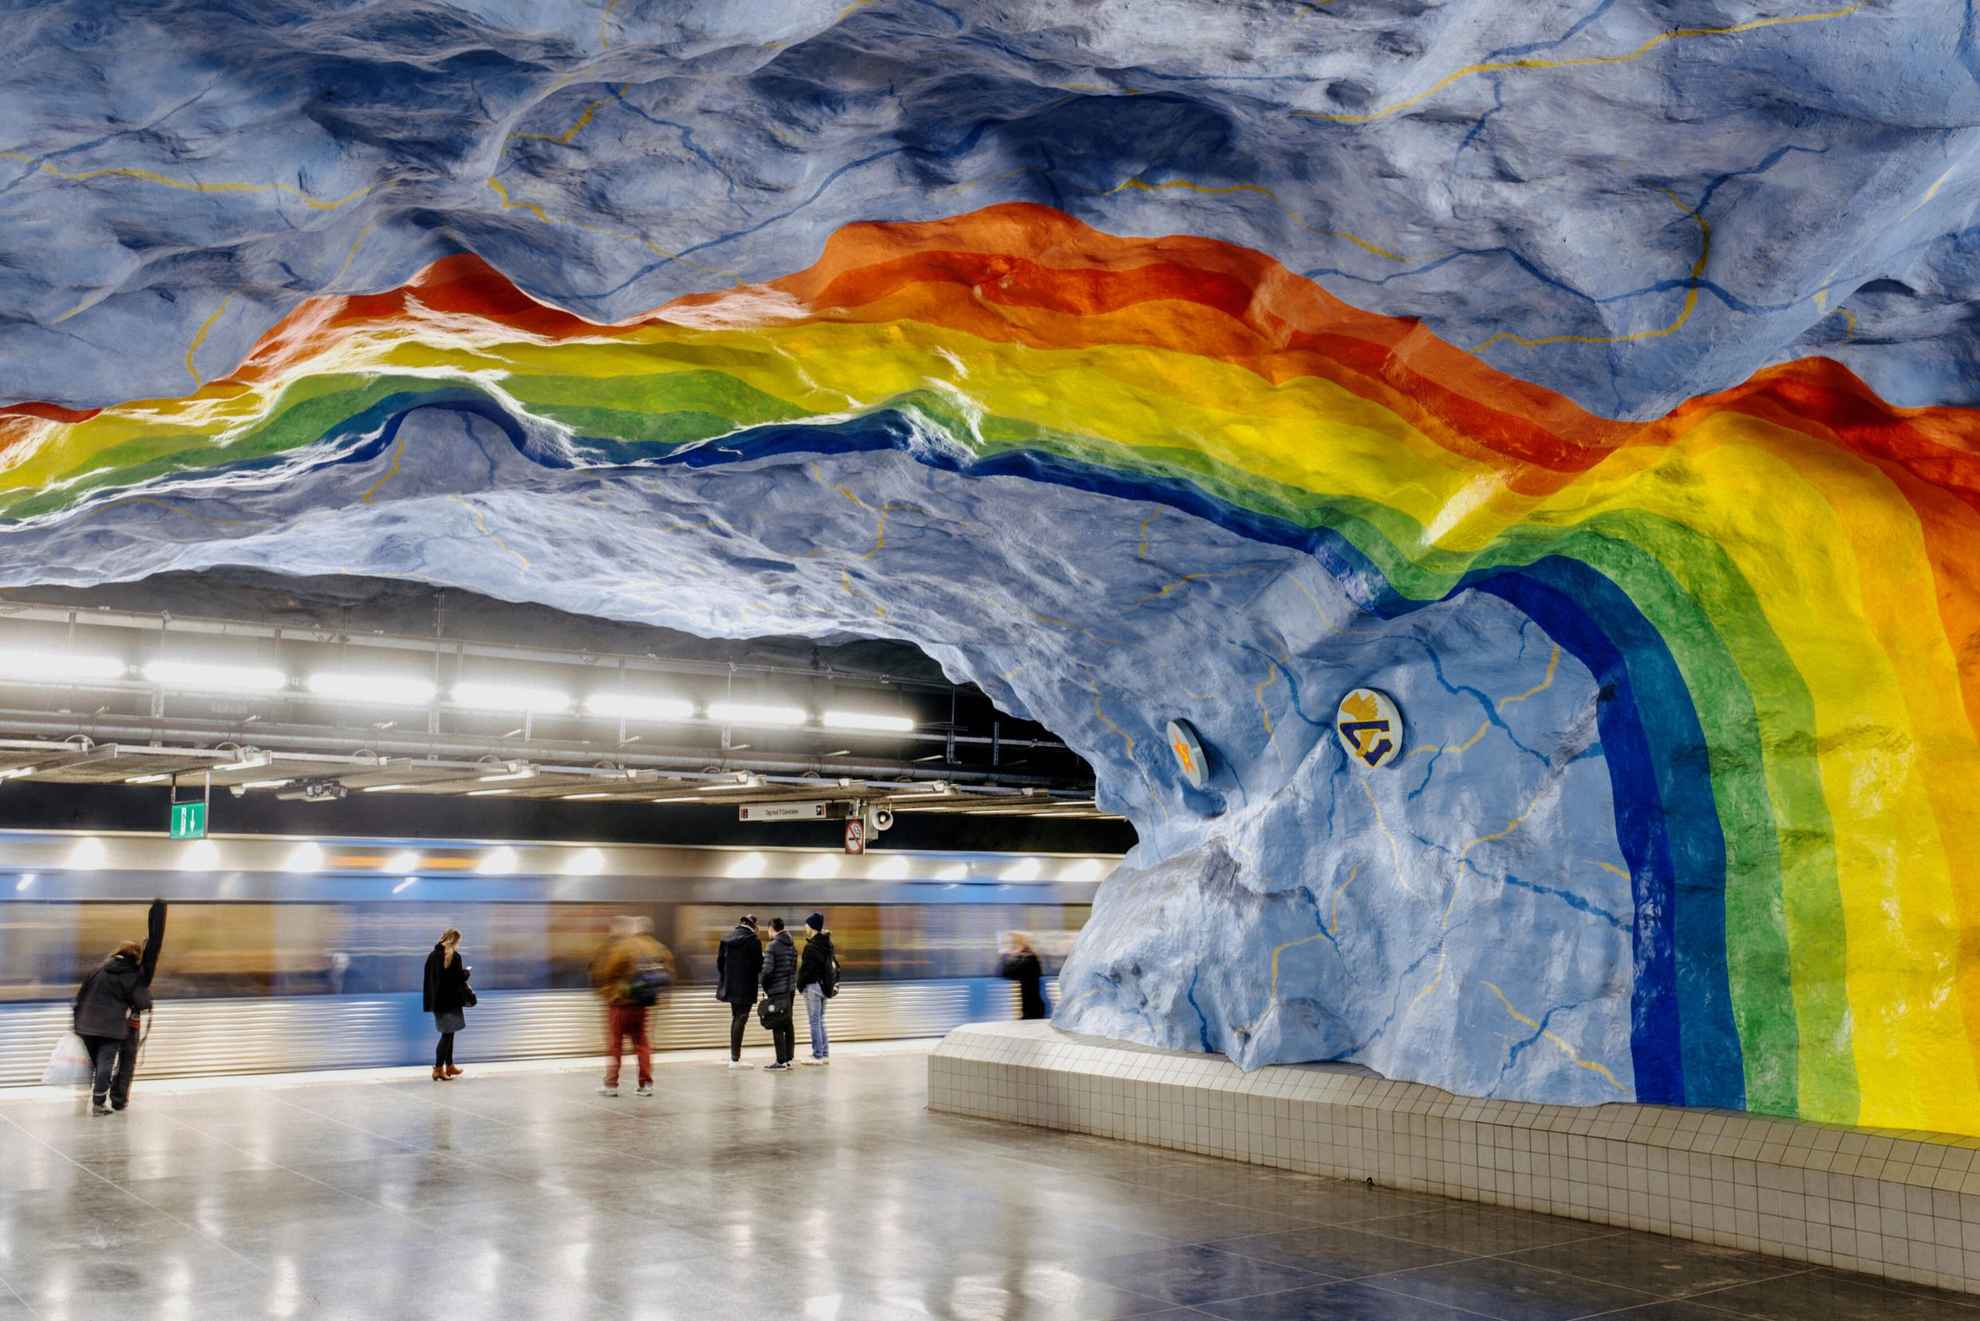 Een regenboog in levendige kleuren geschilderd op het plafond in een metrostation.